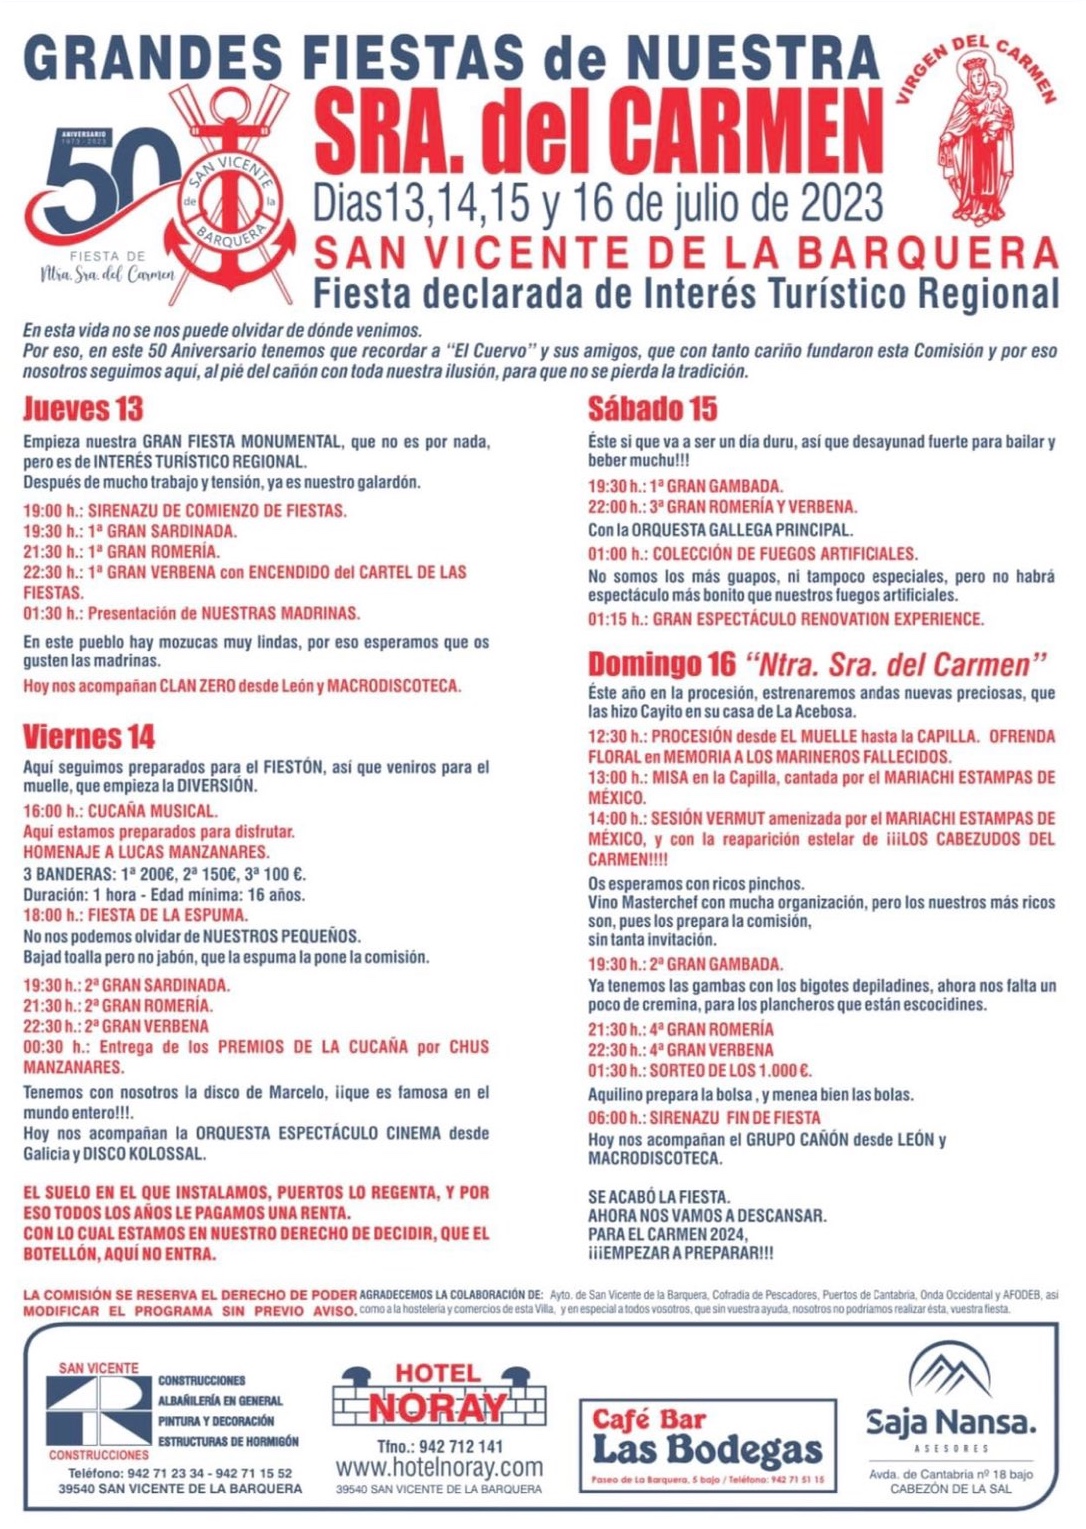 Fiestas del Carmen San Vicente de la Barquera 2023